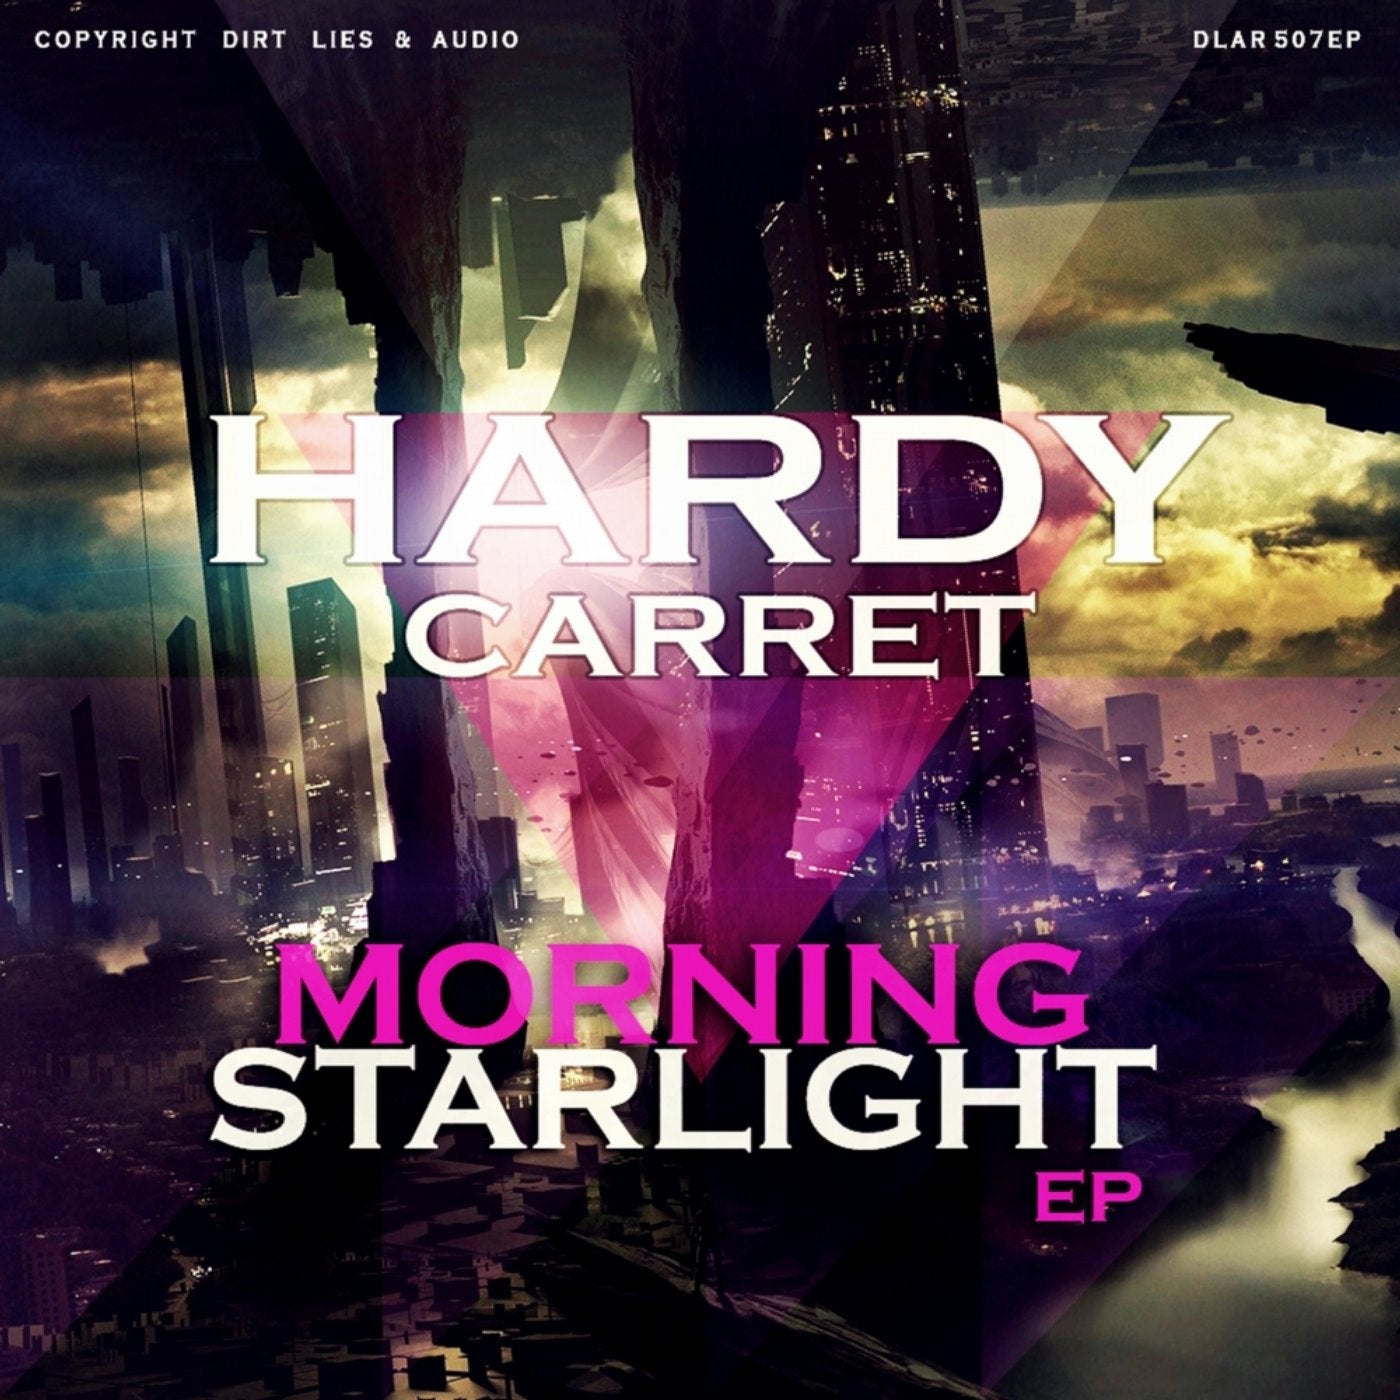 Morning Starlight EP